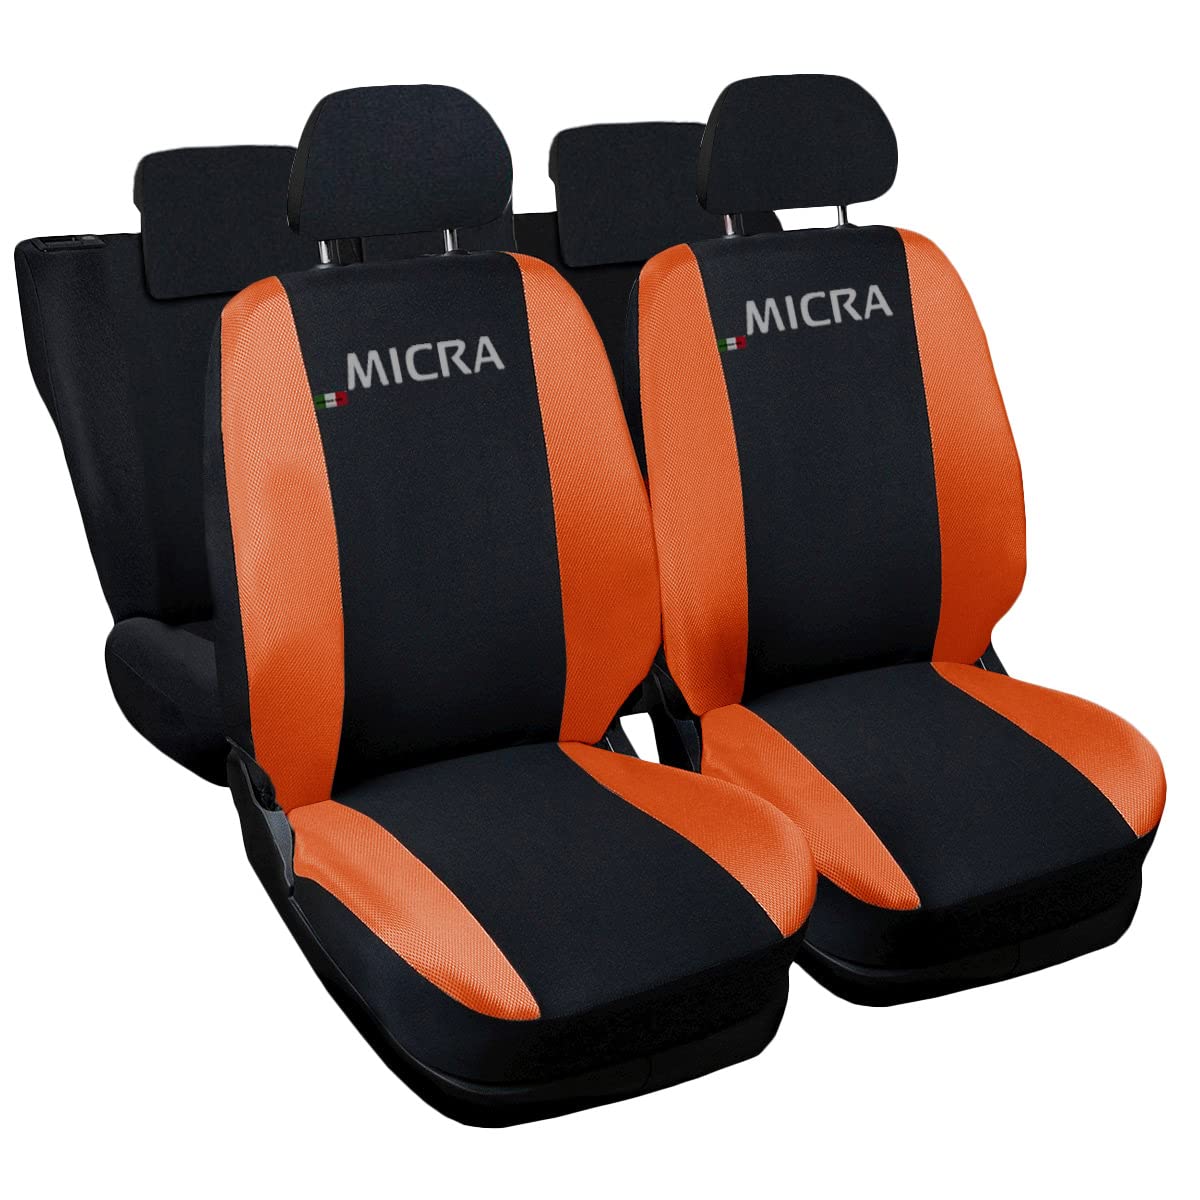 Auto Accessori Lupex - Sitzbezüge für Autositz, kompatibel Autositzbezüge für Micra, schwarz orange, Made in Italy, Set Sitzbezüge für Vorder- und Rücksitze, Polyester-Gewebe, Auto-Innenbezüge von Auto Accessori Lupex